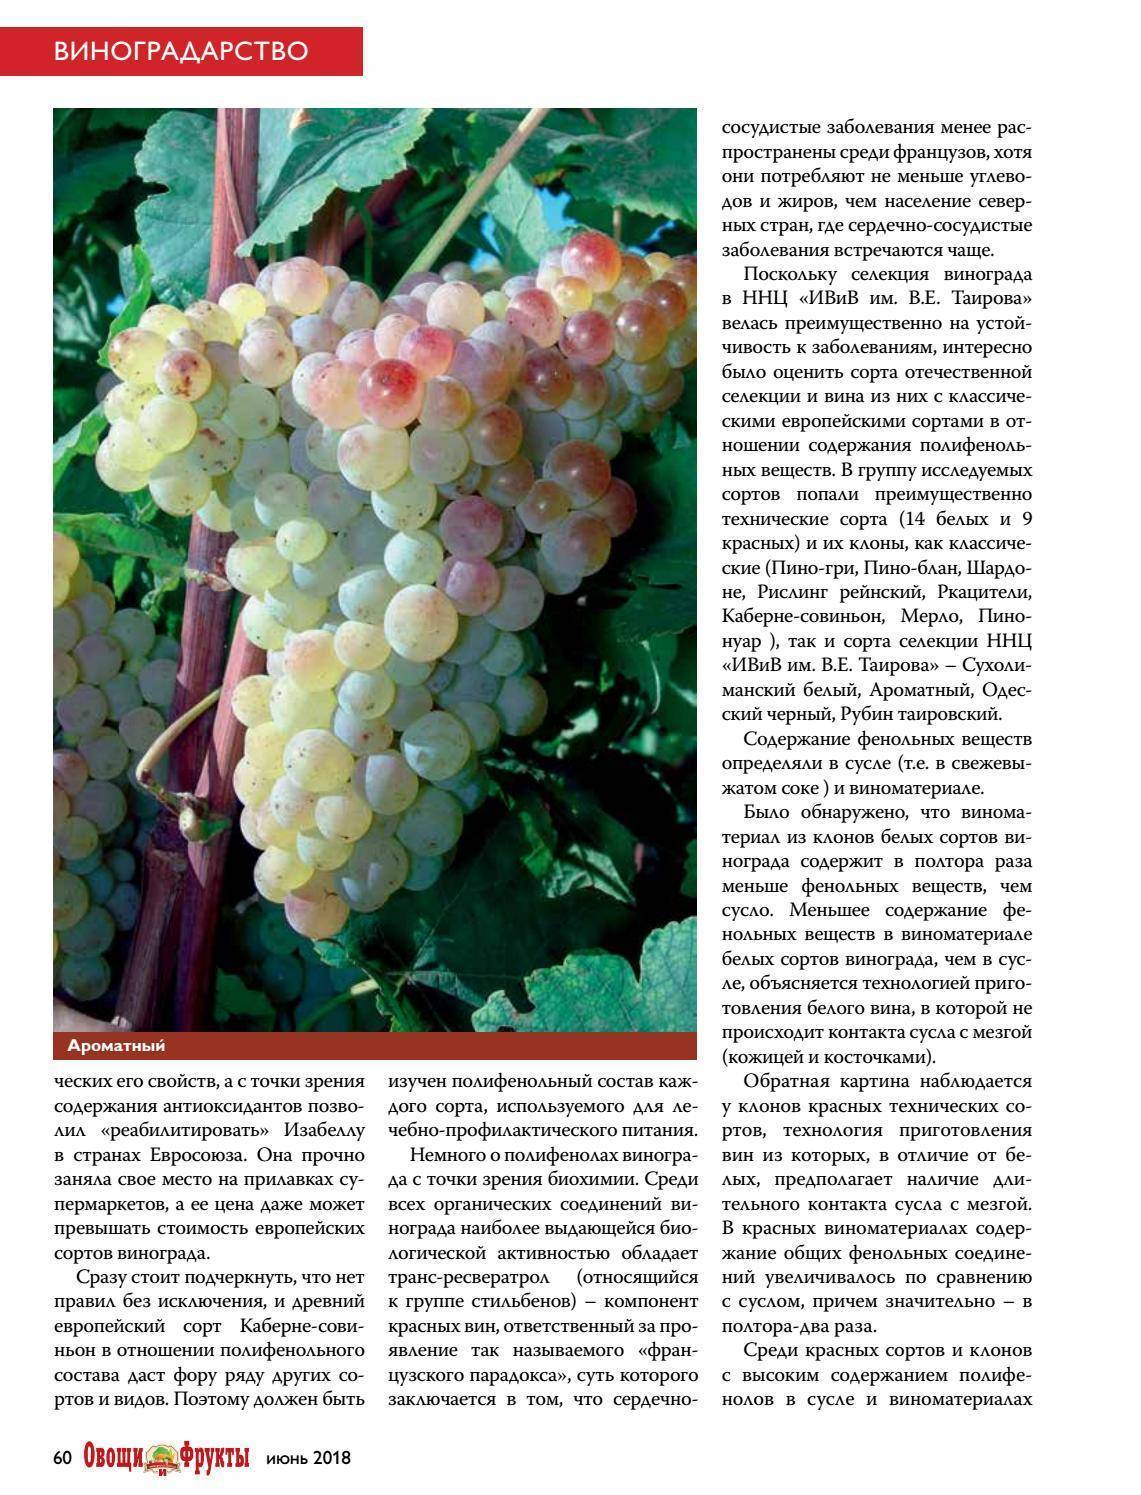 Мускатный виноград «тасон»: стоит ли выделять место в винограднике?